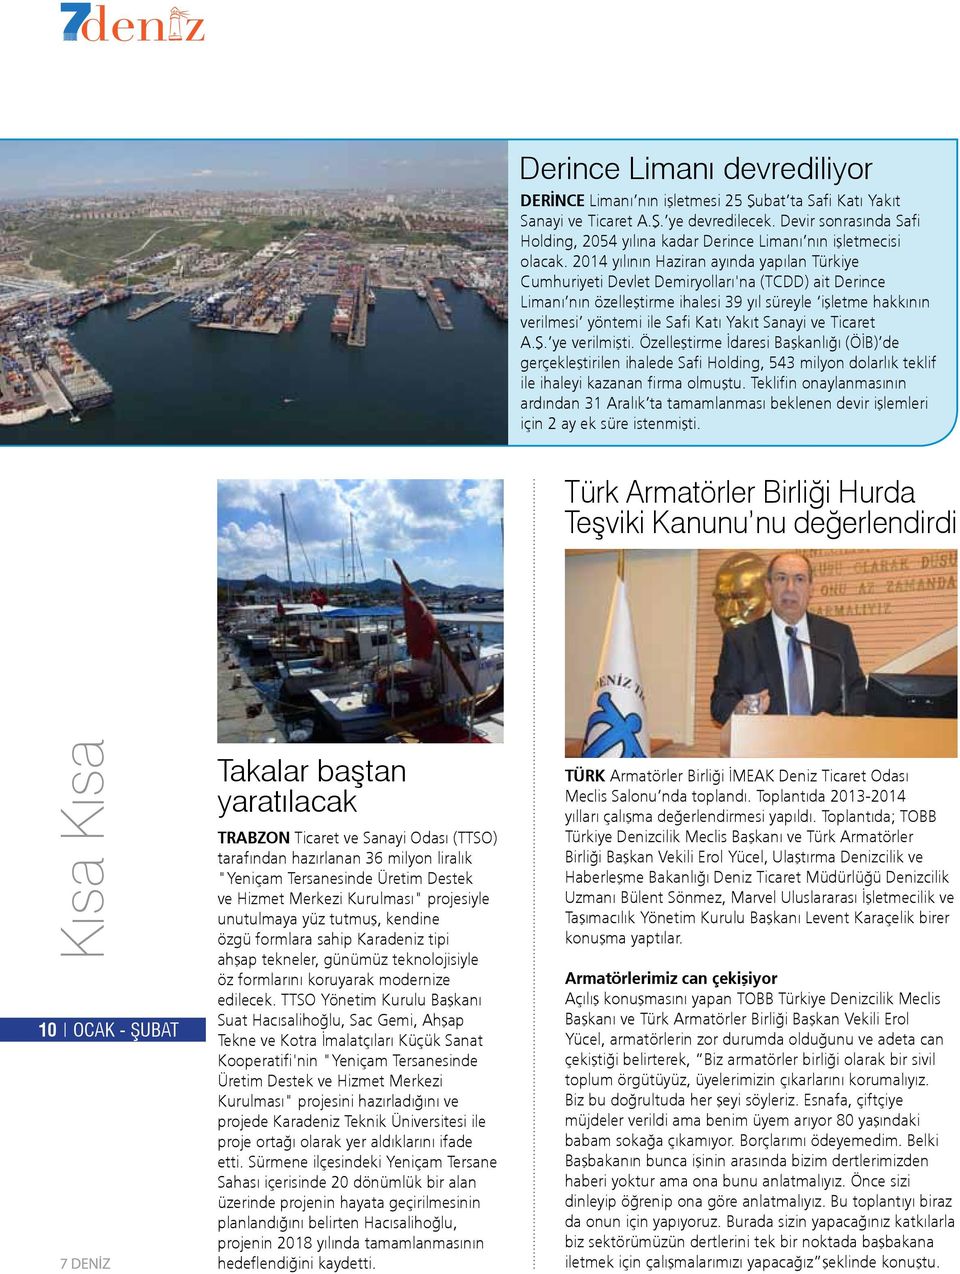 2014 yılının Haziran ayında yapılan Türkiye Cumhuriyeti Devlet Demiryolları'na (TCDD) ait Derince Limanı nın özelleştirme ihalesi 39 yıl süreyle işletme hakkının verilmesi yöntemi ile Safi Katı Yakıt